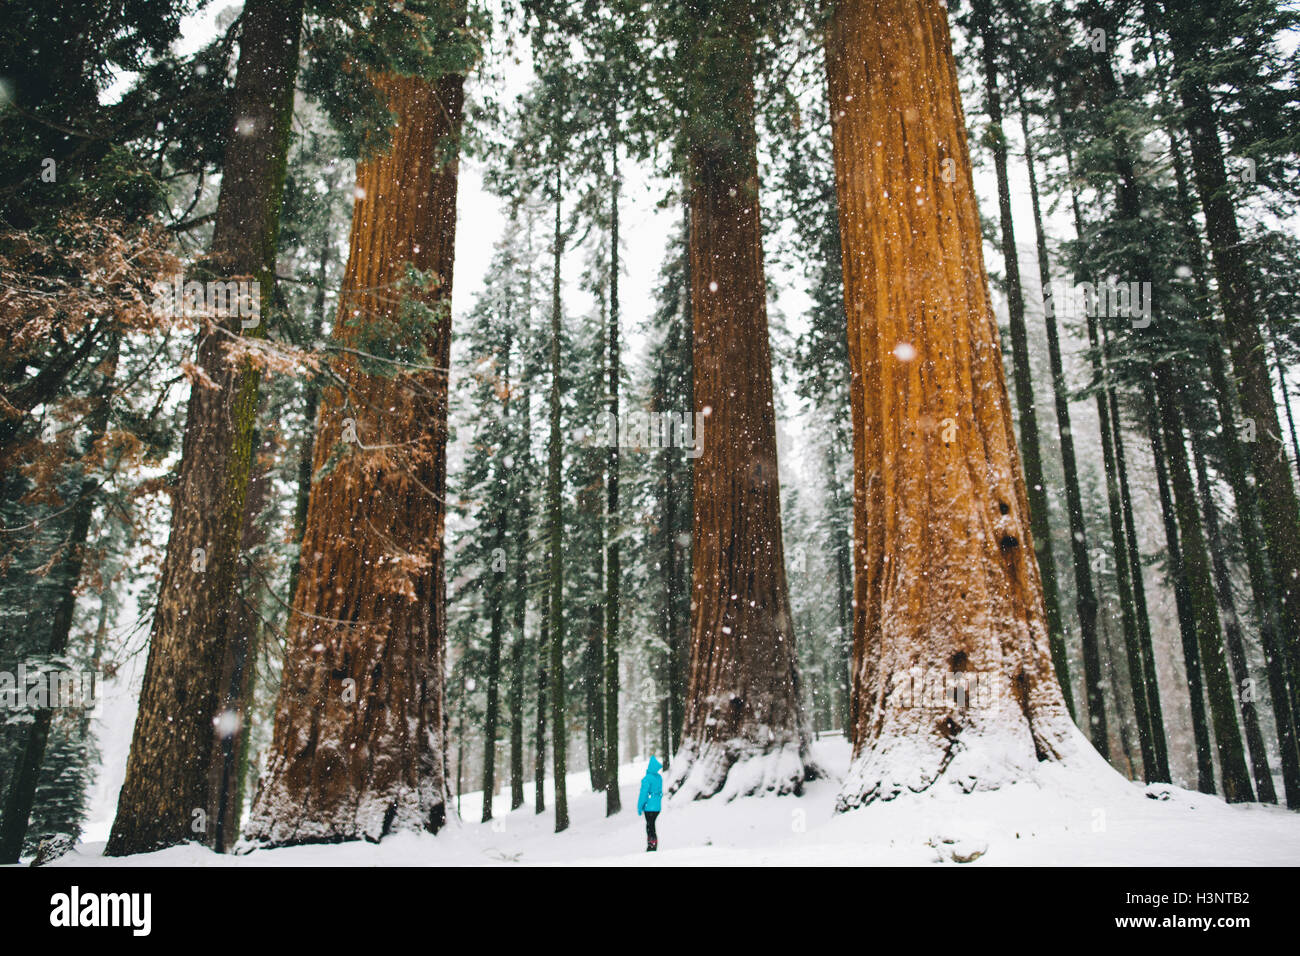 Femme par des arbres géants dans la forêt couverte de neige, Sequoia National Park, California, USA Banque D'Images